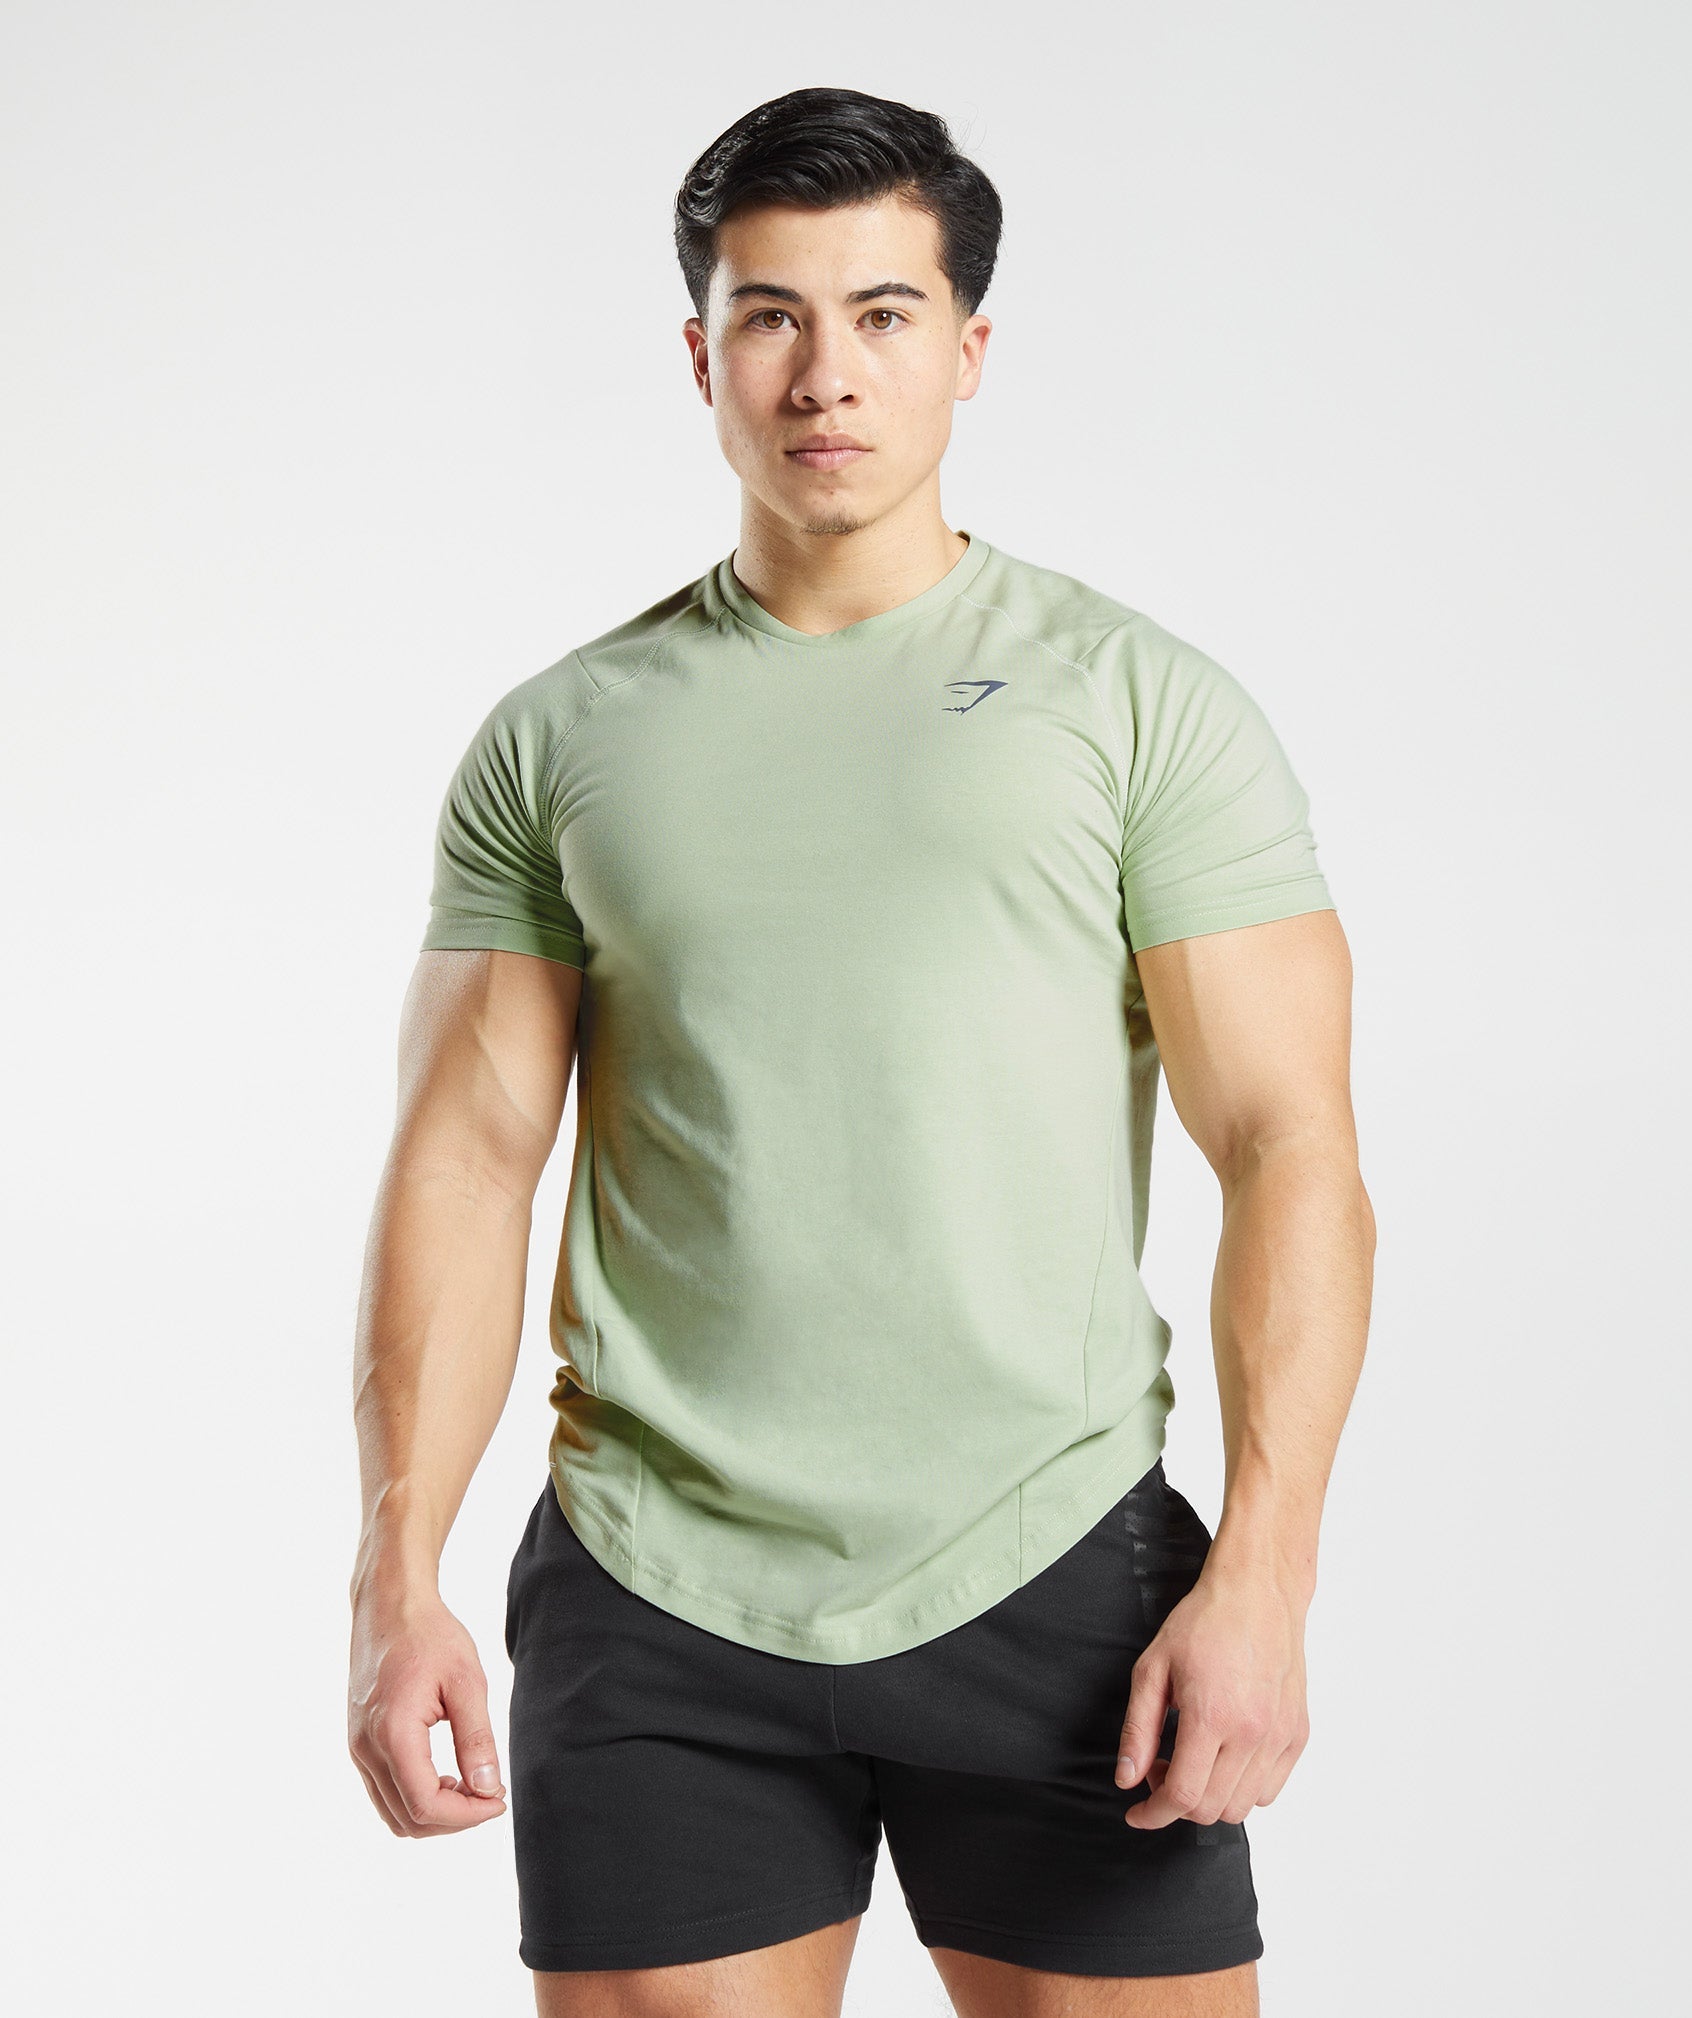 Gymshark Bold T-Shirt - Light Grey